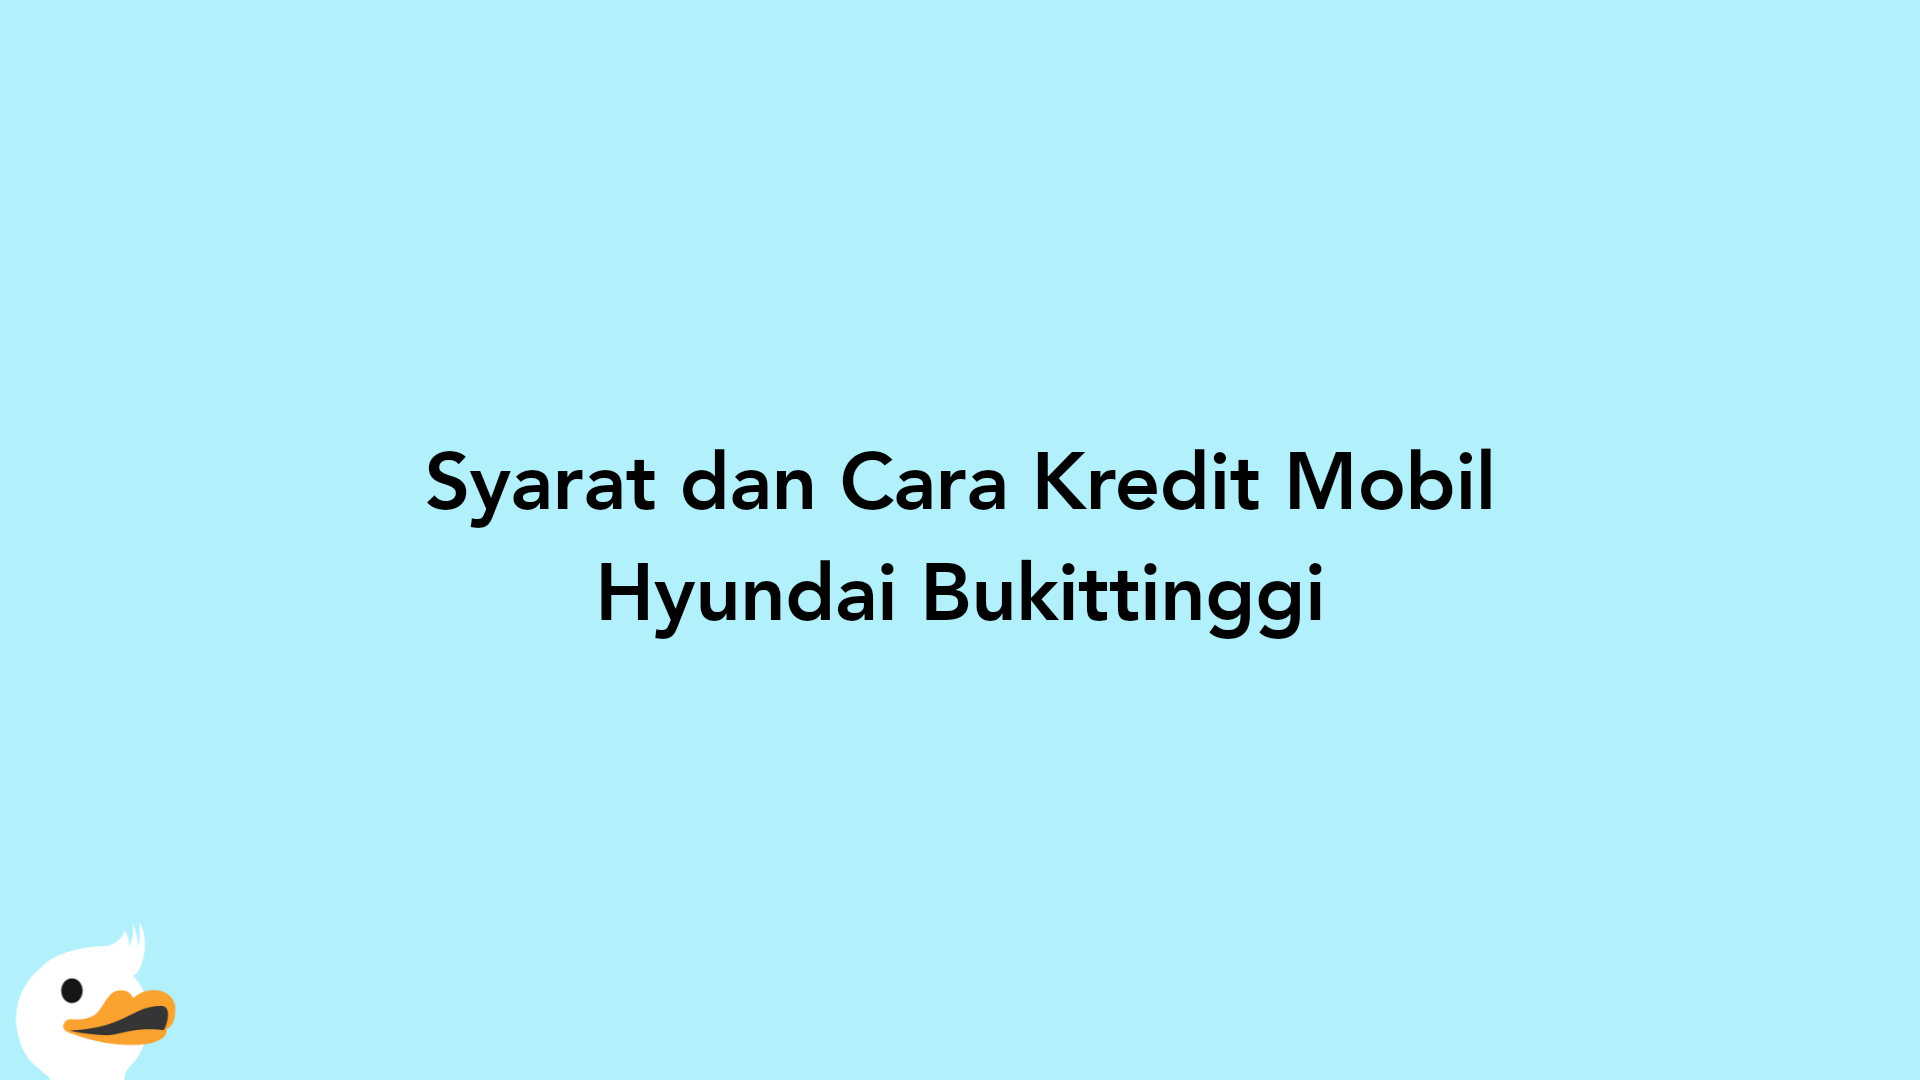 Syarat dan Cara Kredit Mobil Hyundai Bukittinggi